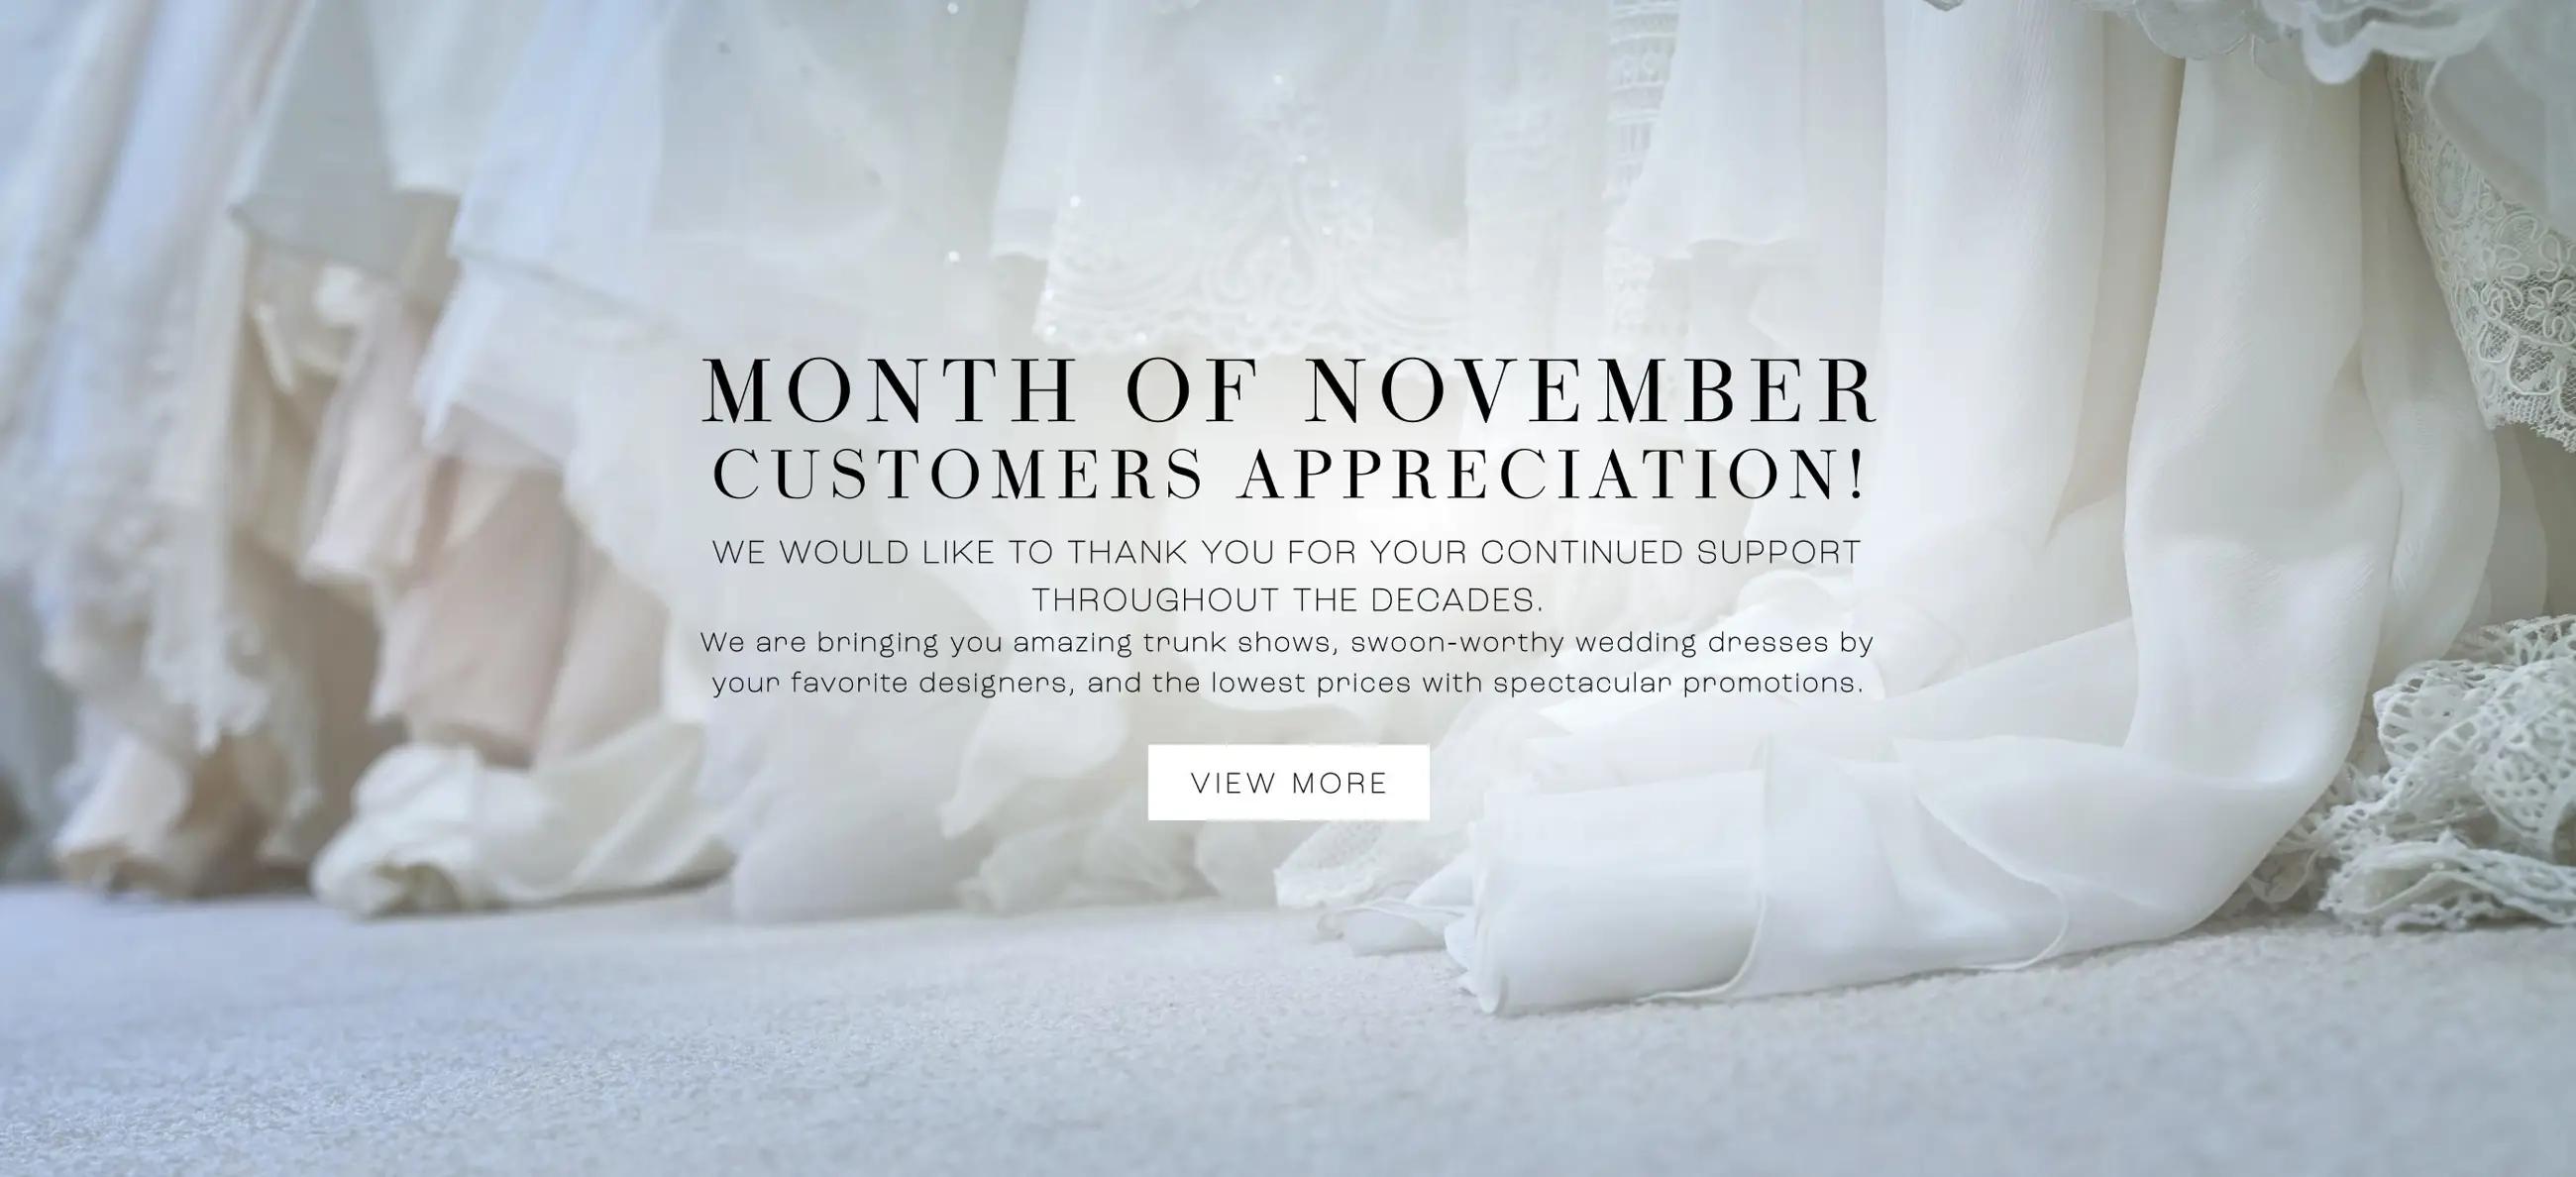 Month of November desktop banner